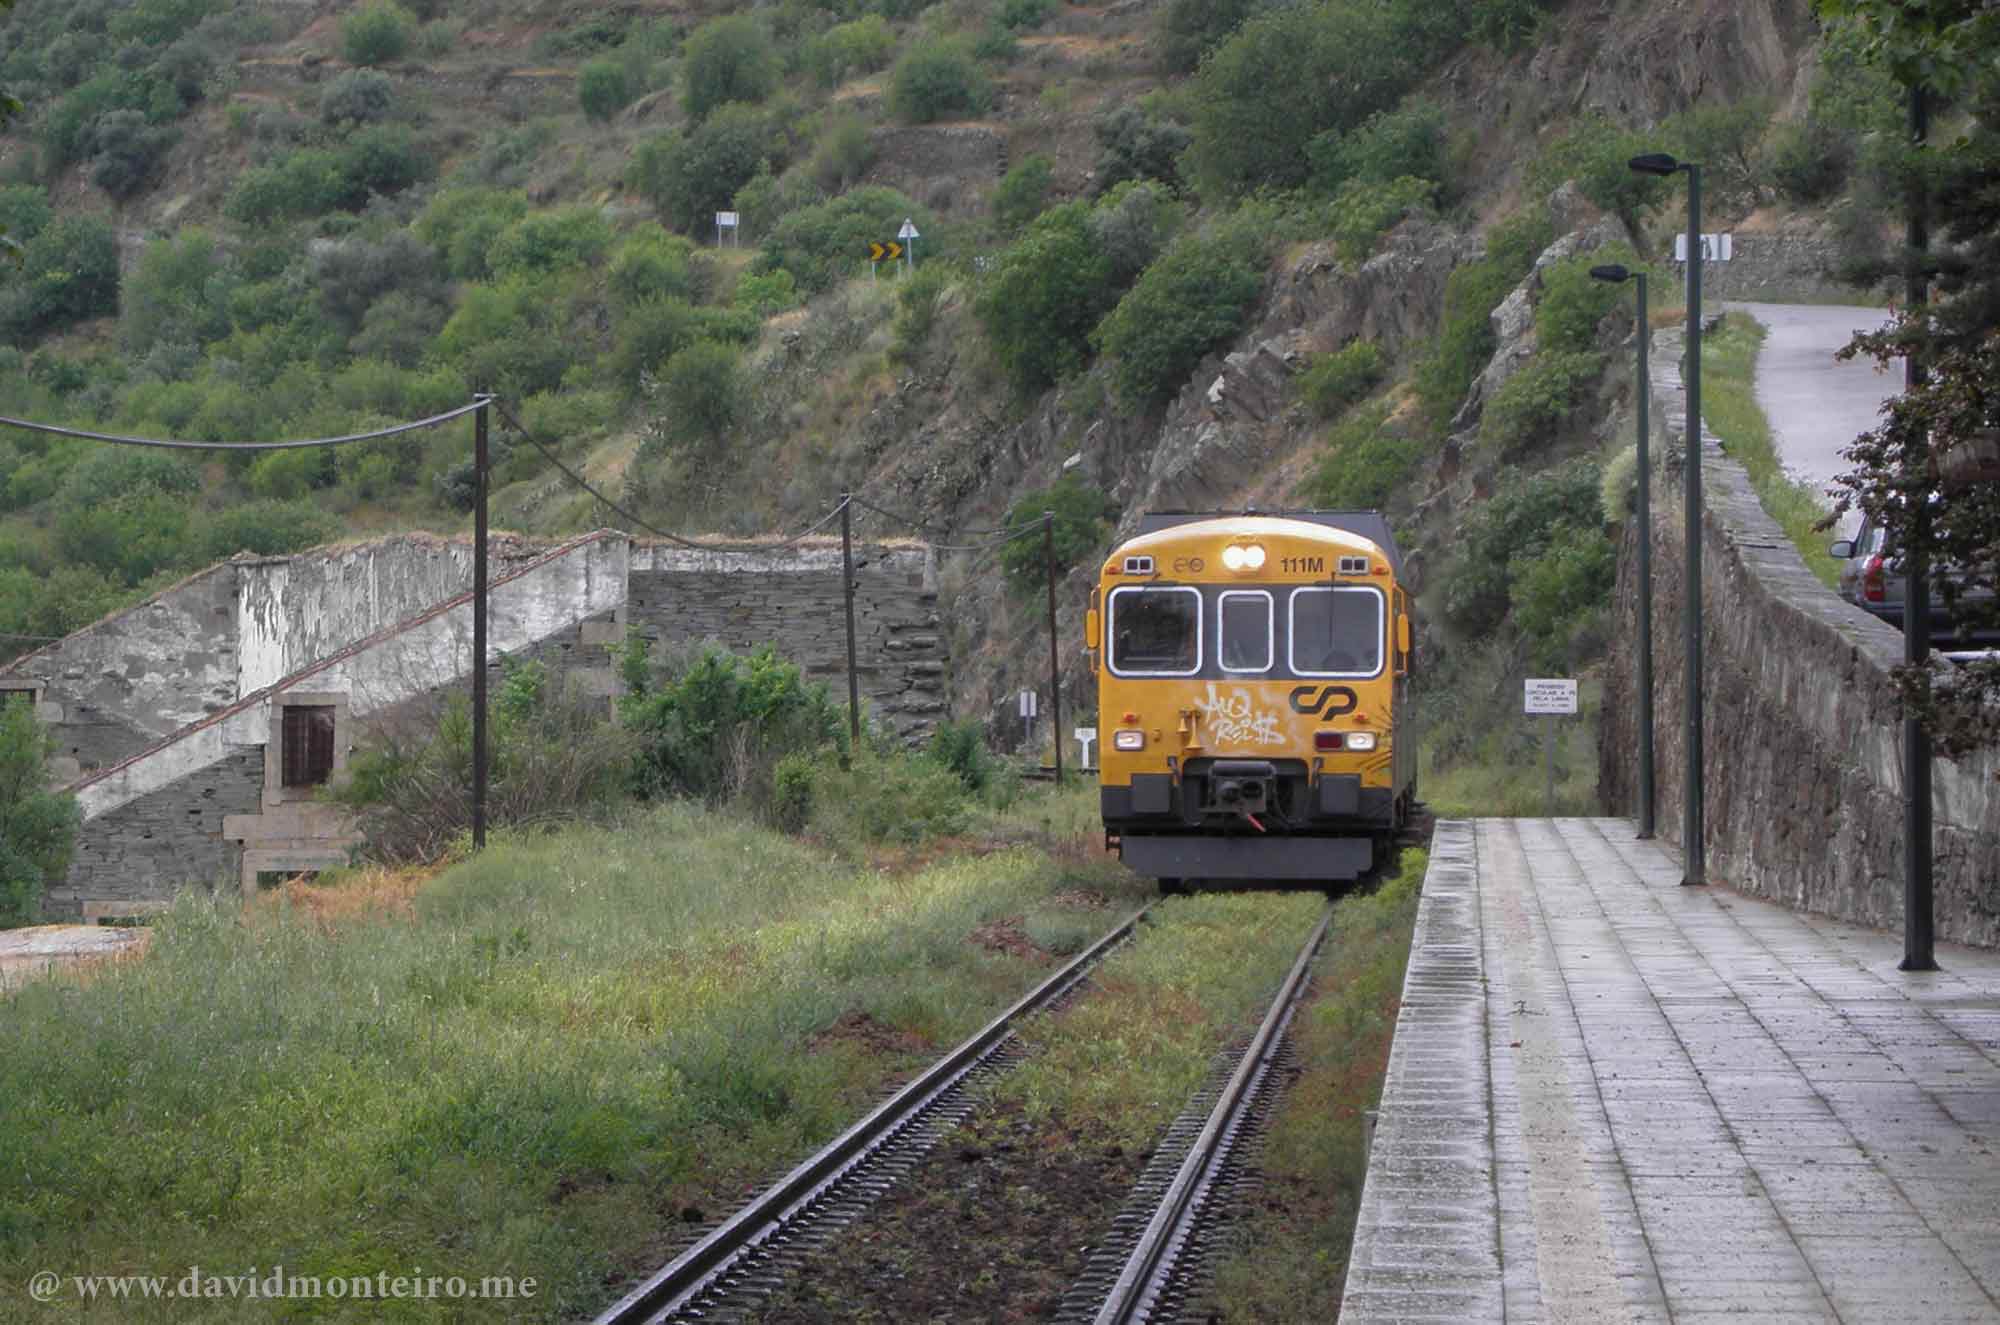 Douro Valley train ride